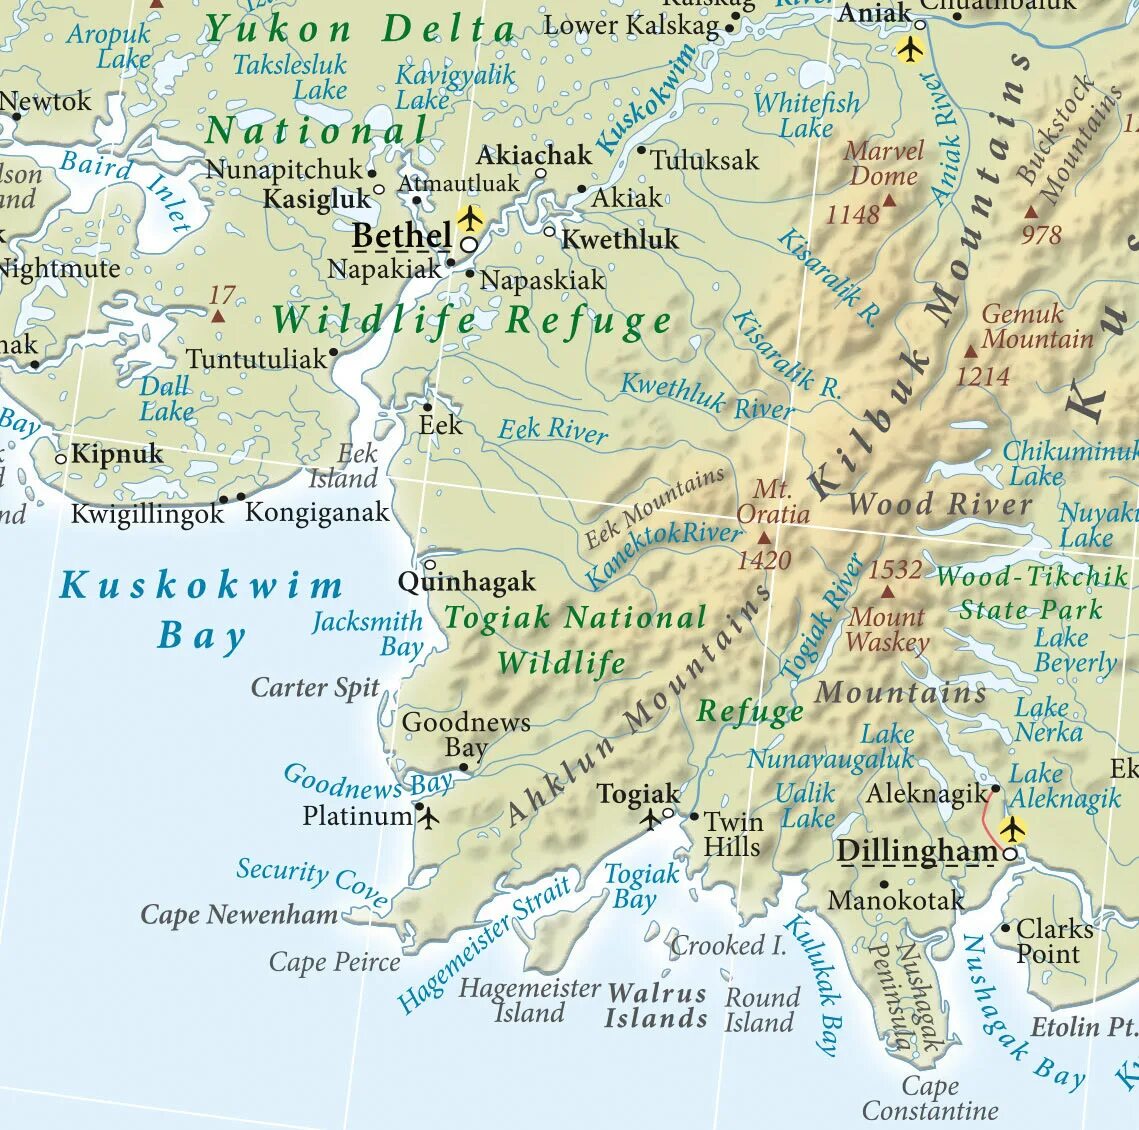 Аляска какой полуостров. Аляска штат США на карте. Где находится полуостров Аляска на карте Северной Америки. Расположение полуострова Аляска на карте. Границы штата Аляска на карте.